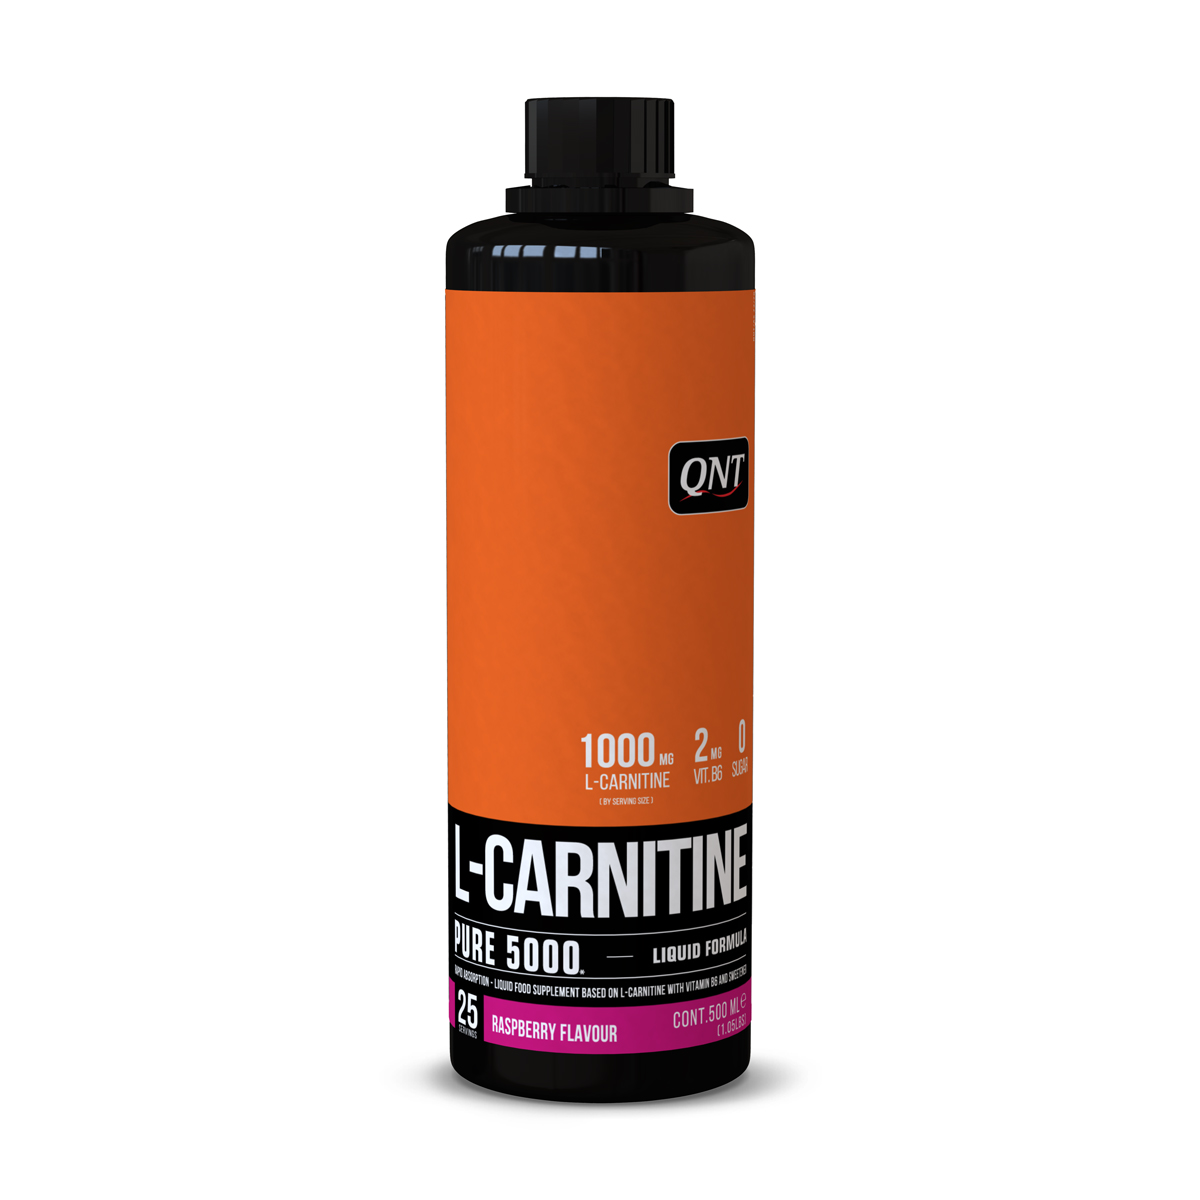 L-Carnitina - L-CARNITINE LIQUID 500 ml raspberry, https:0769429911.websales.ro